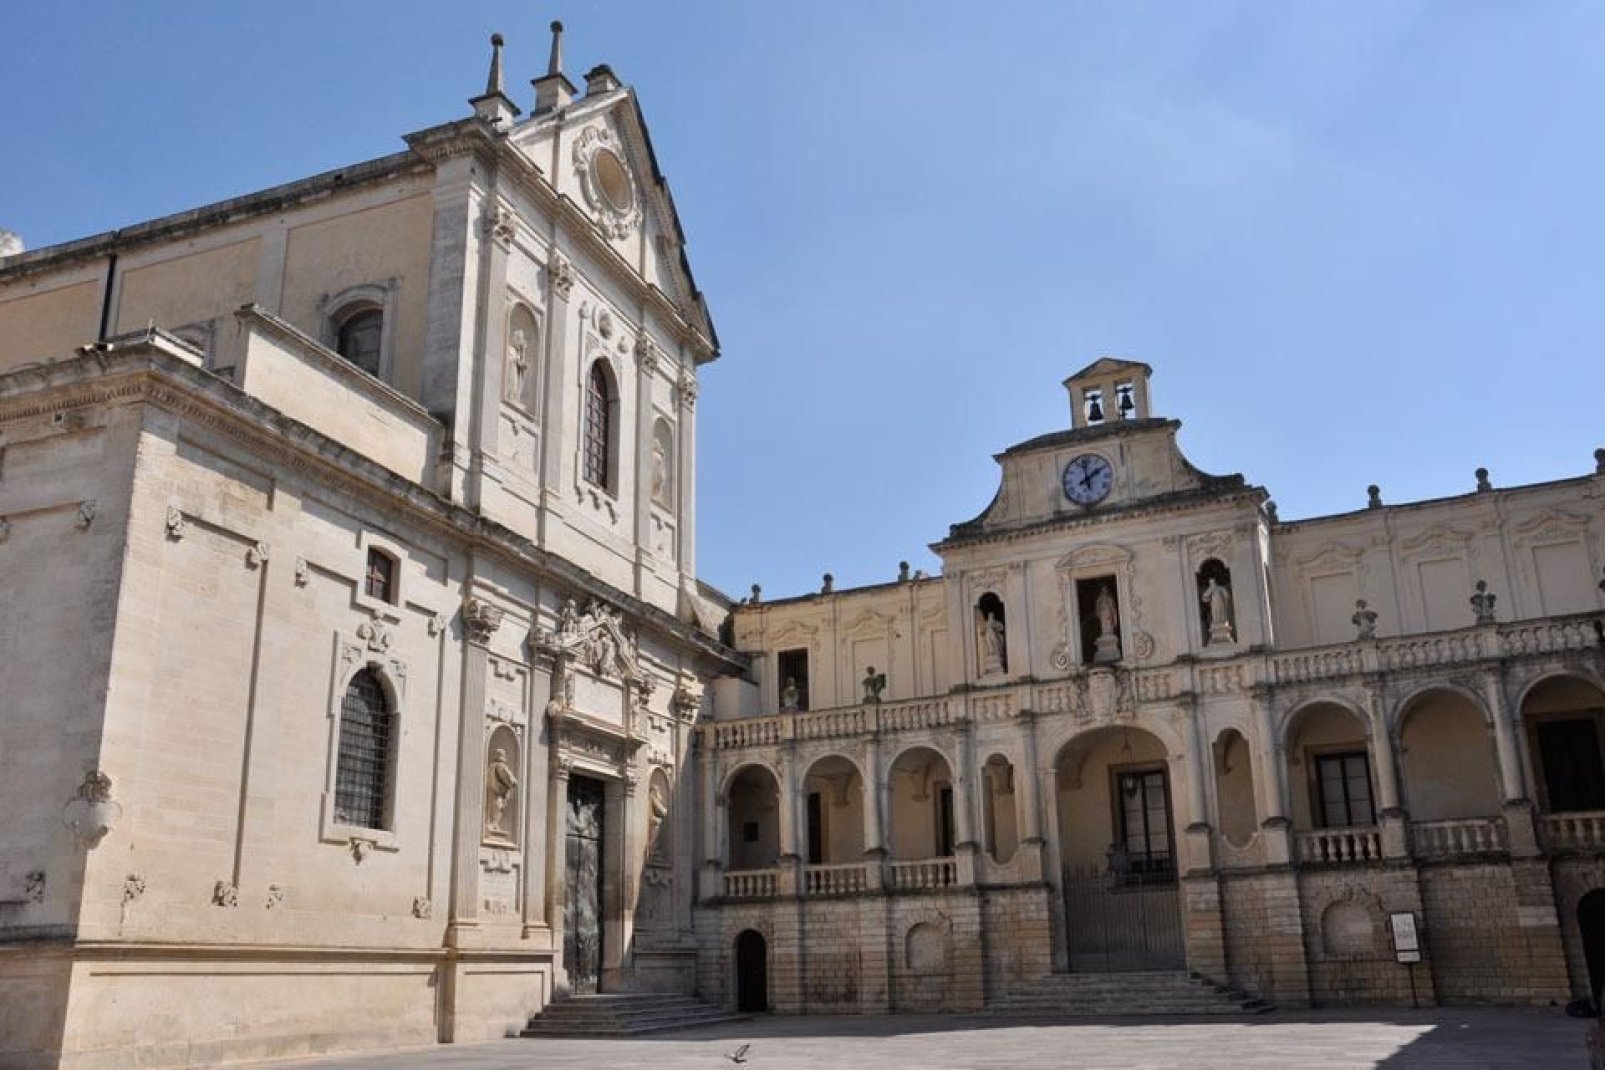 L'attuale facciata, un capolavoro del Barocco, fu costruita nel 1758 da Emanuele Manieri